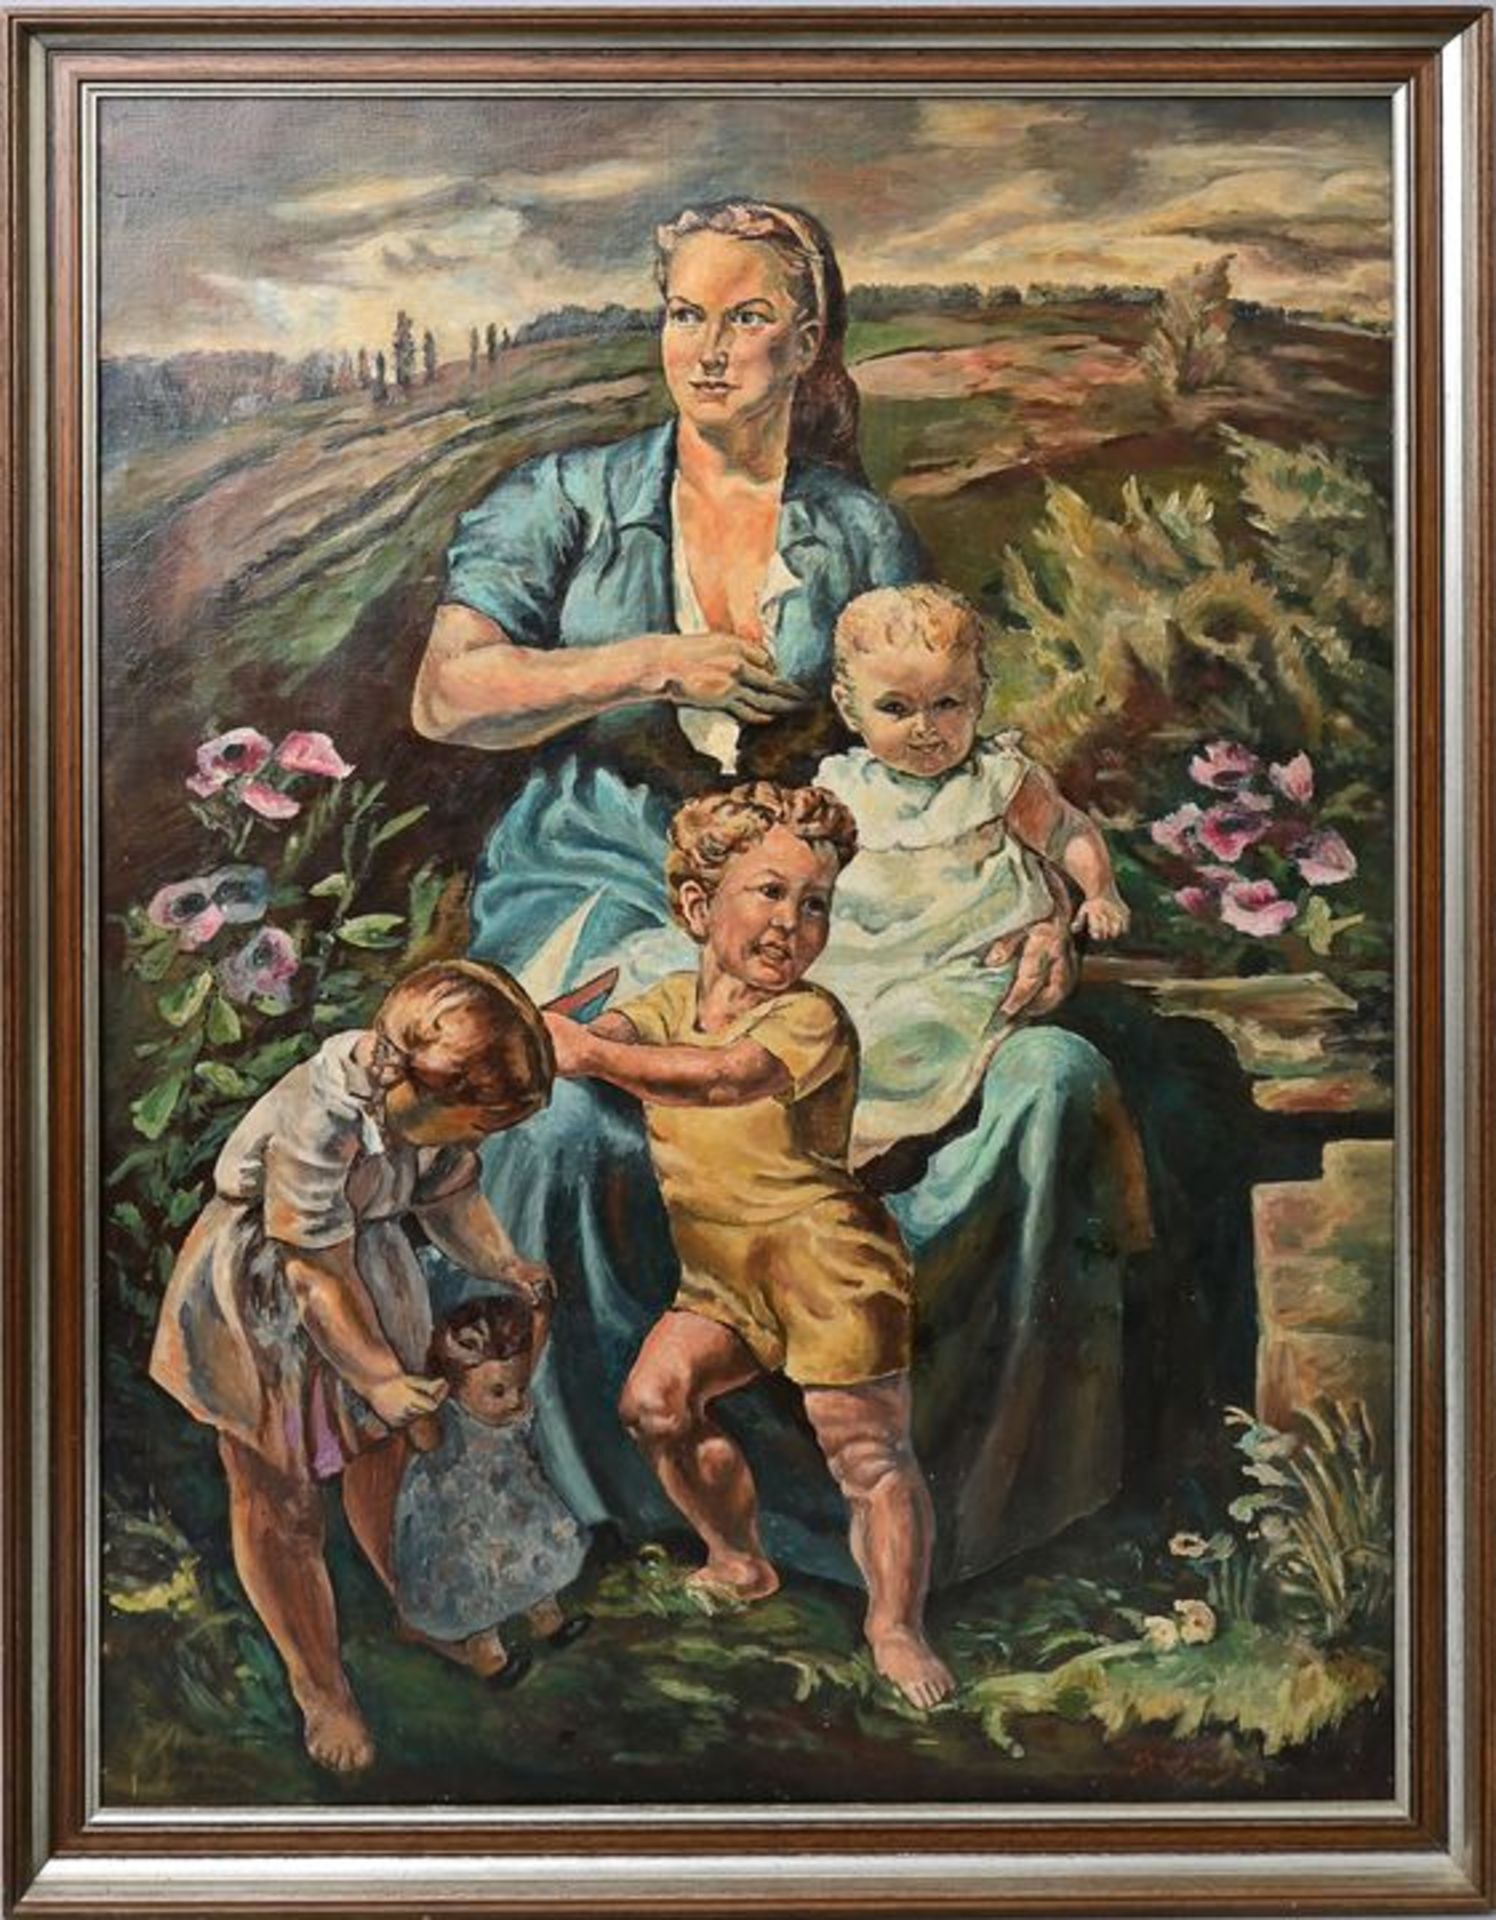 Kopie nach Heymann, Richard "In sicherer Hut" / copy after Heymann, Family portrait - Image 2 of 7